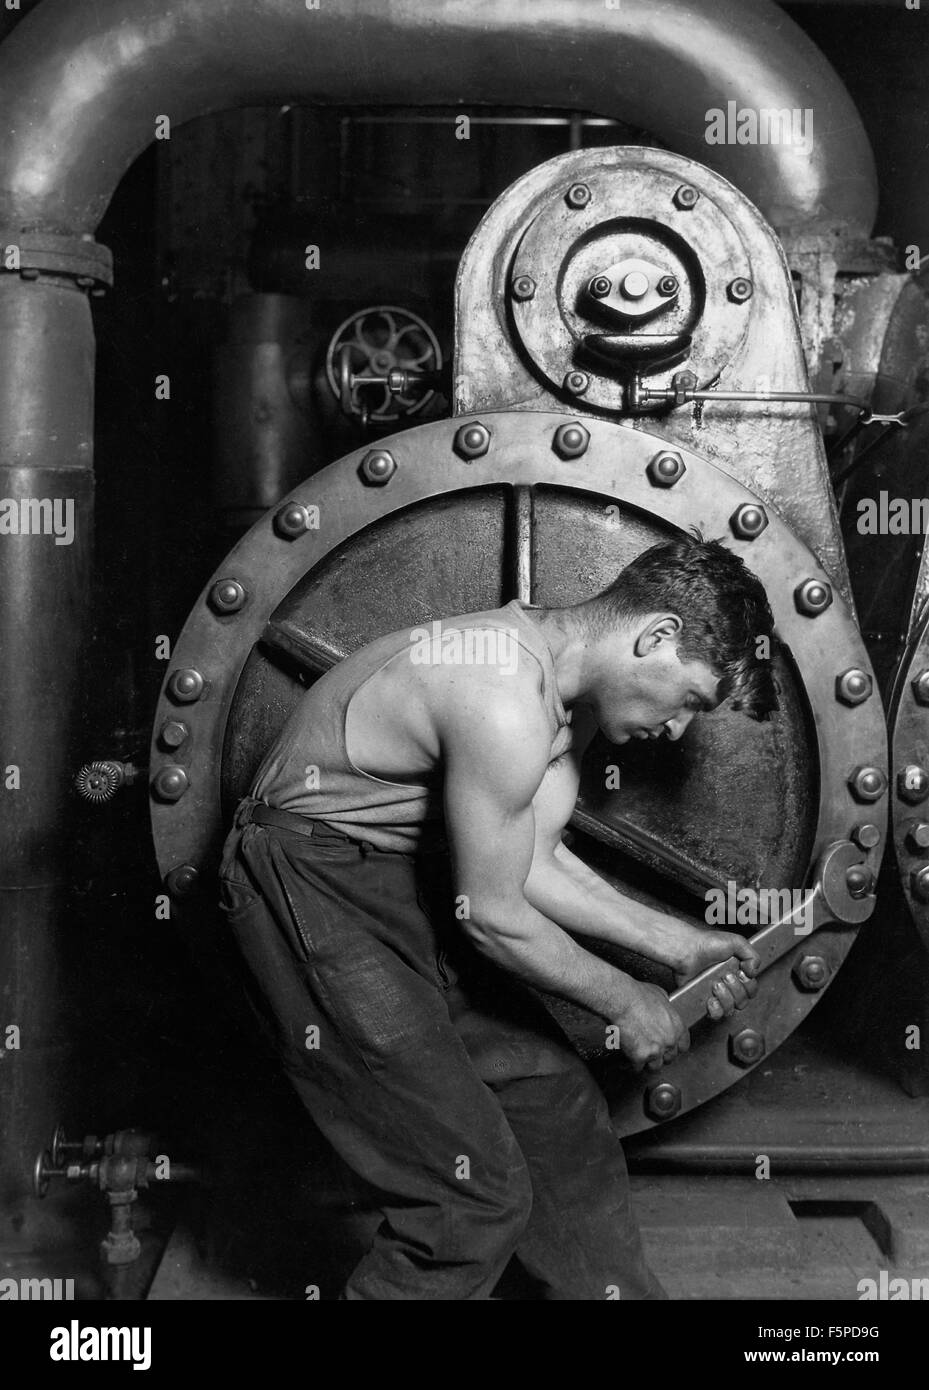 Classic 1920 Photographie par Lewis Wickes Hine d'un mécanicien de centrale électrique sur une pompe à vapeur. Banque D'Images